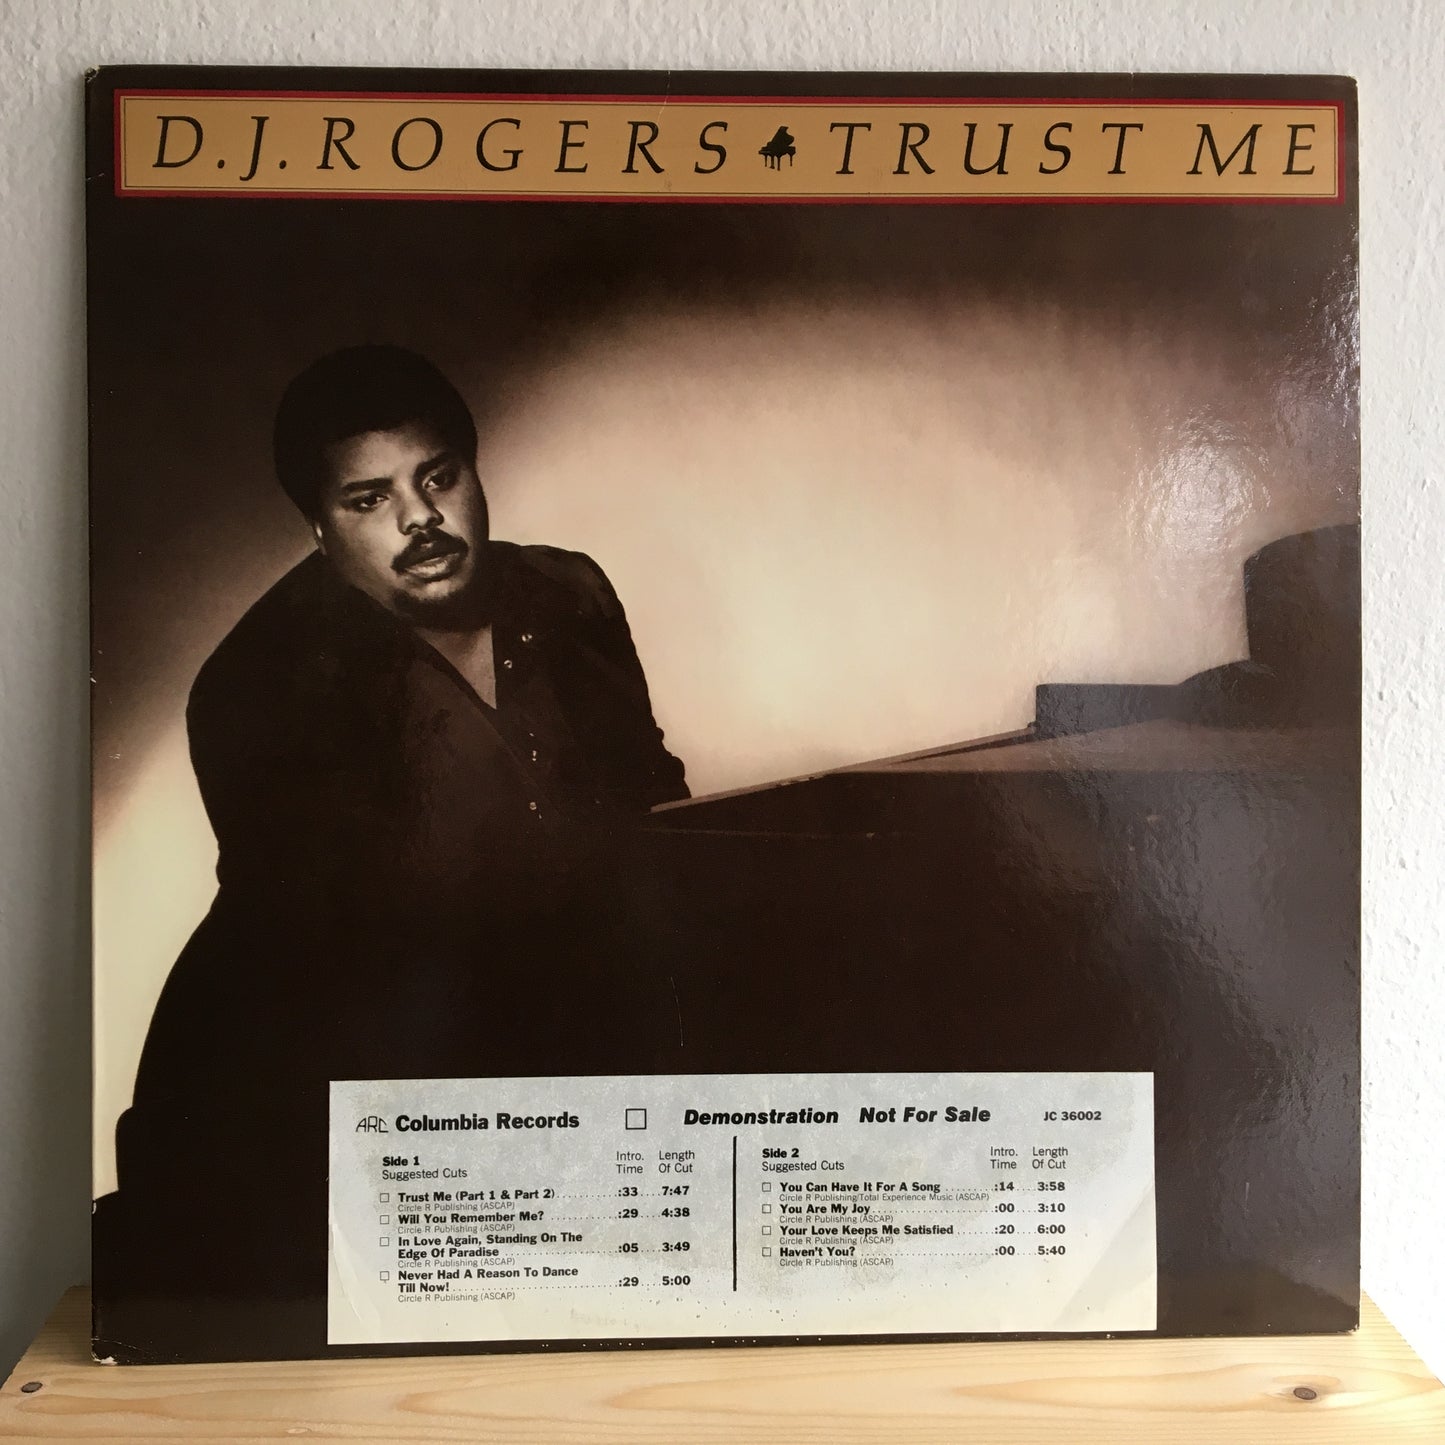 D. J. Rogers – Trust Me